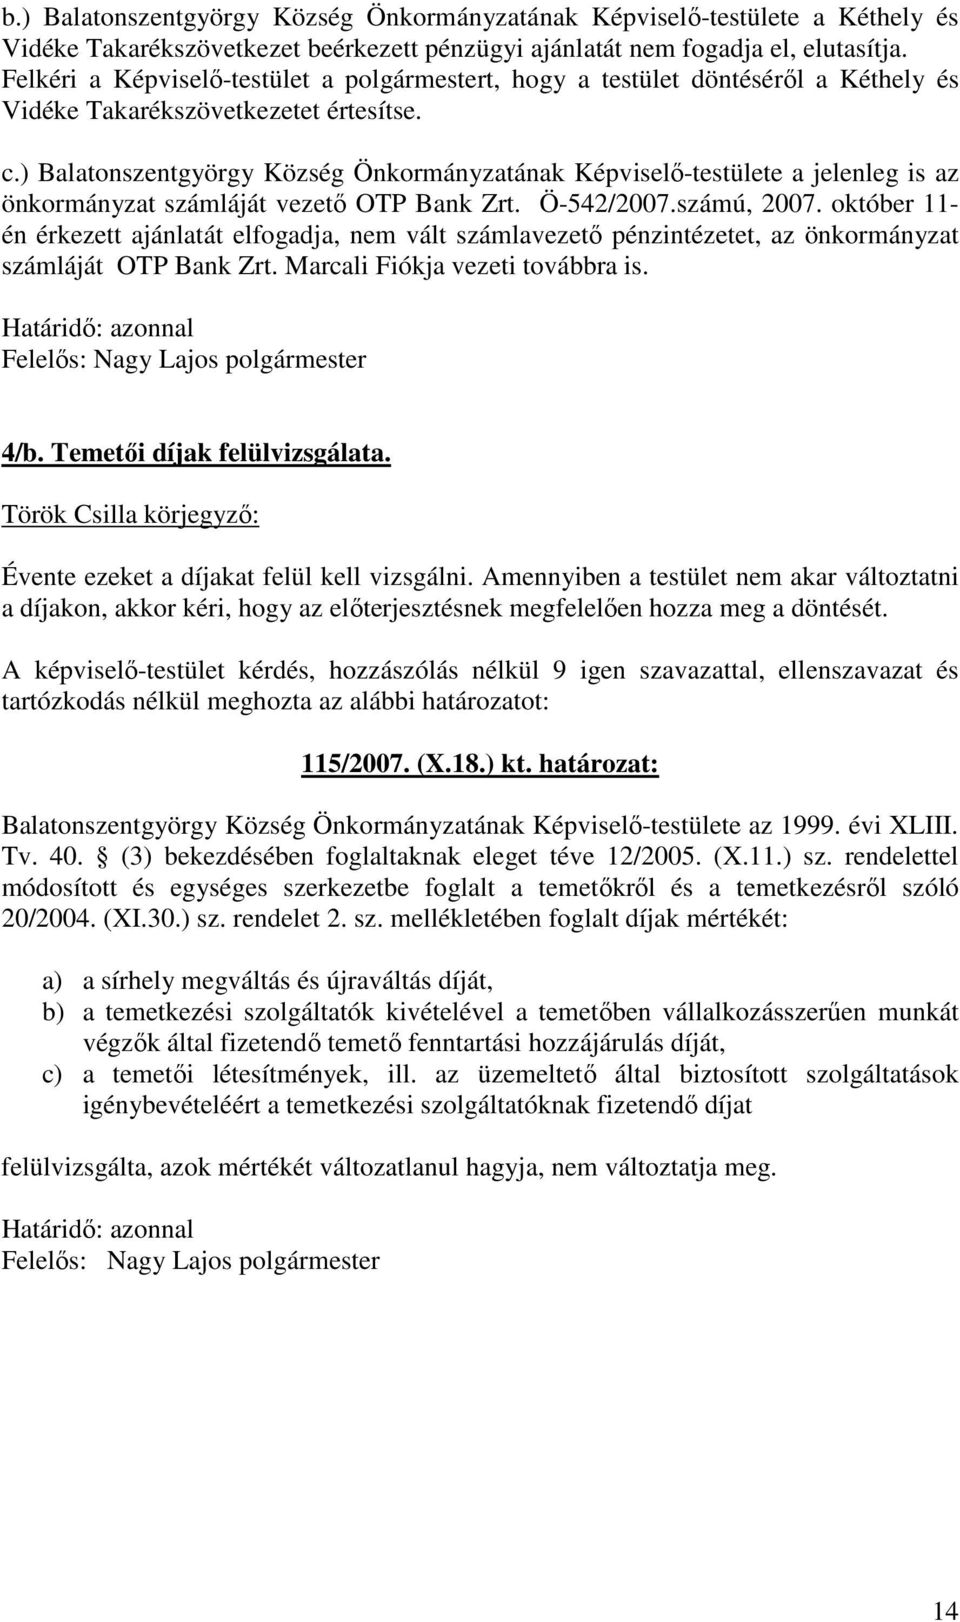 ) Balatonszentgyörgy Község Önkormányzatának Képviselı-testülete a jelenleg is az önkormányzat számláját vezetı OTP Bank Zrt. Ö-542/2007.számú, 2007.